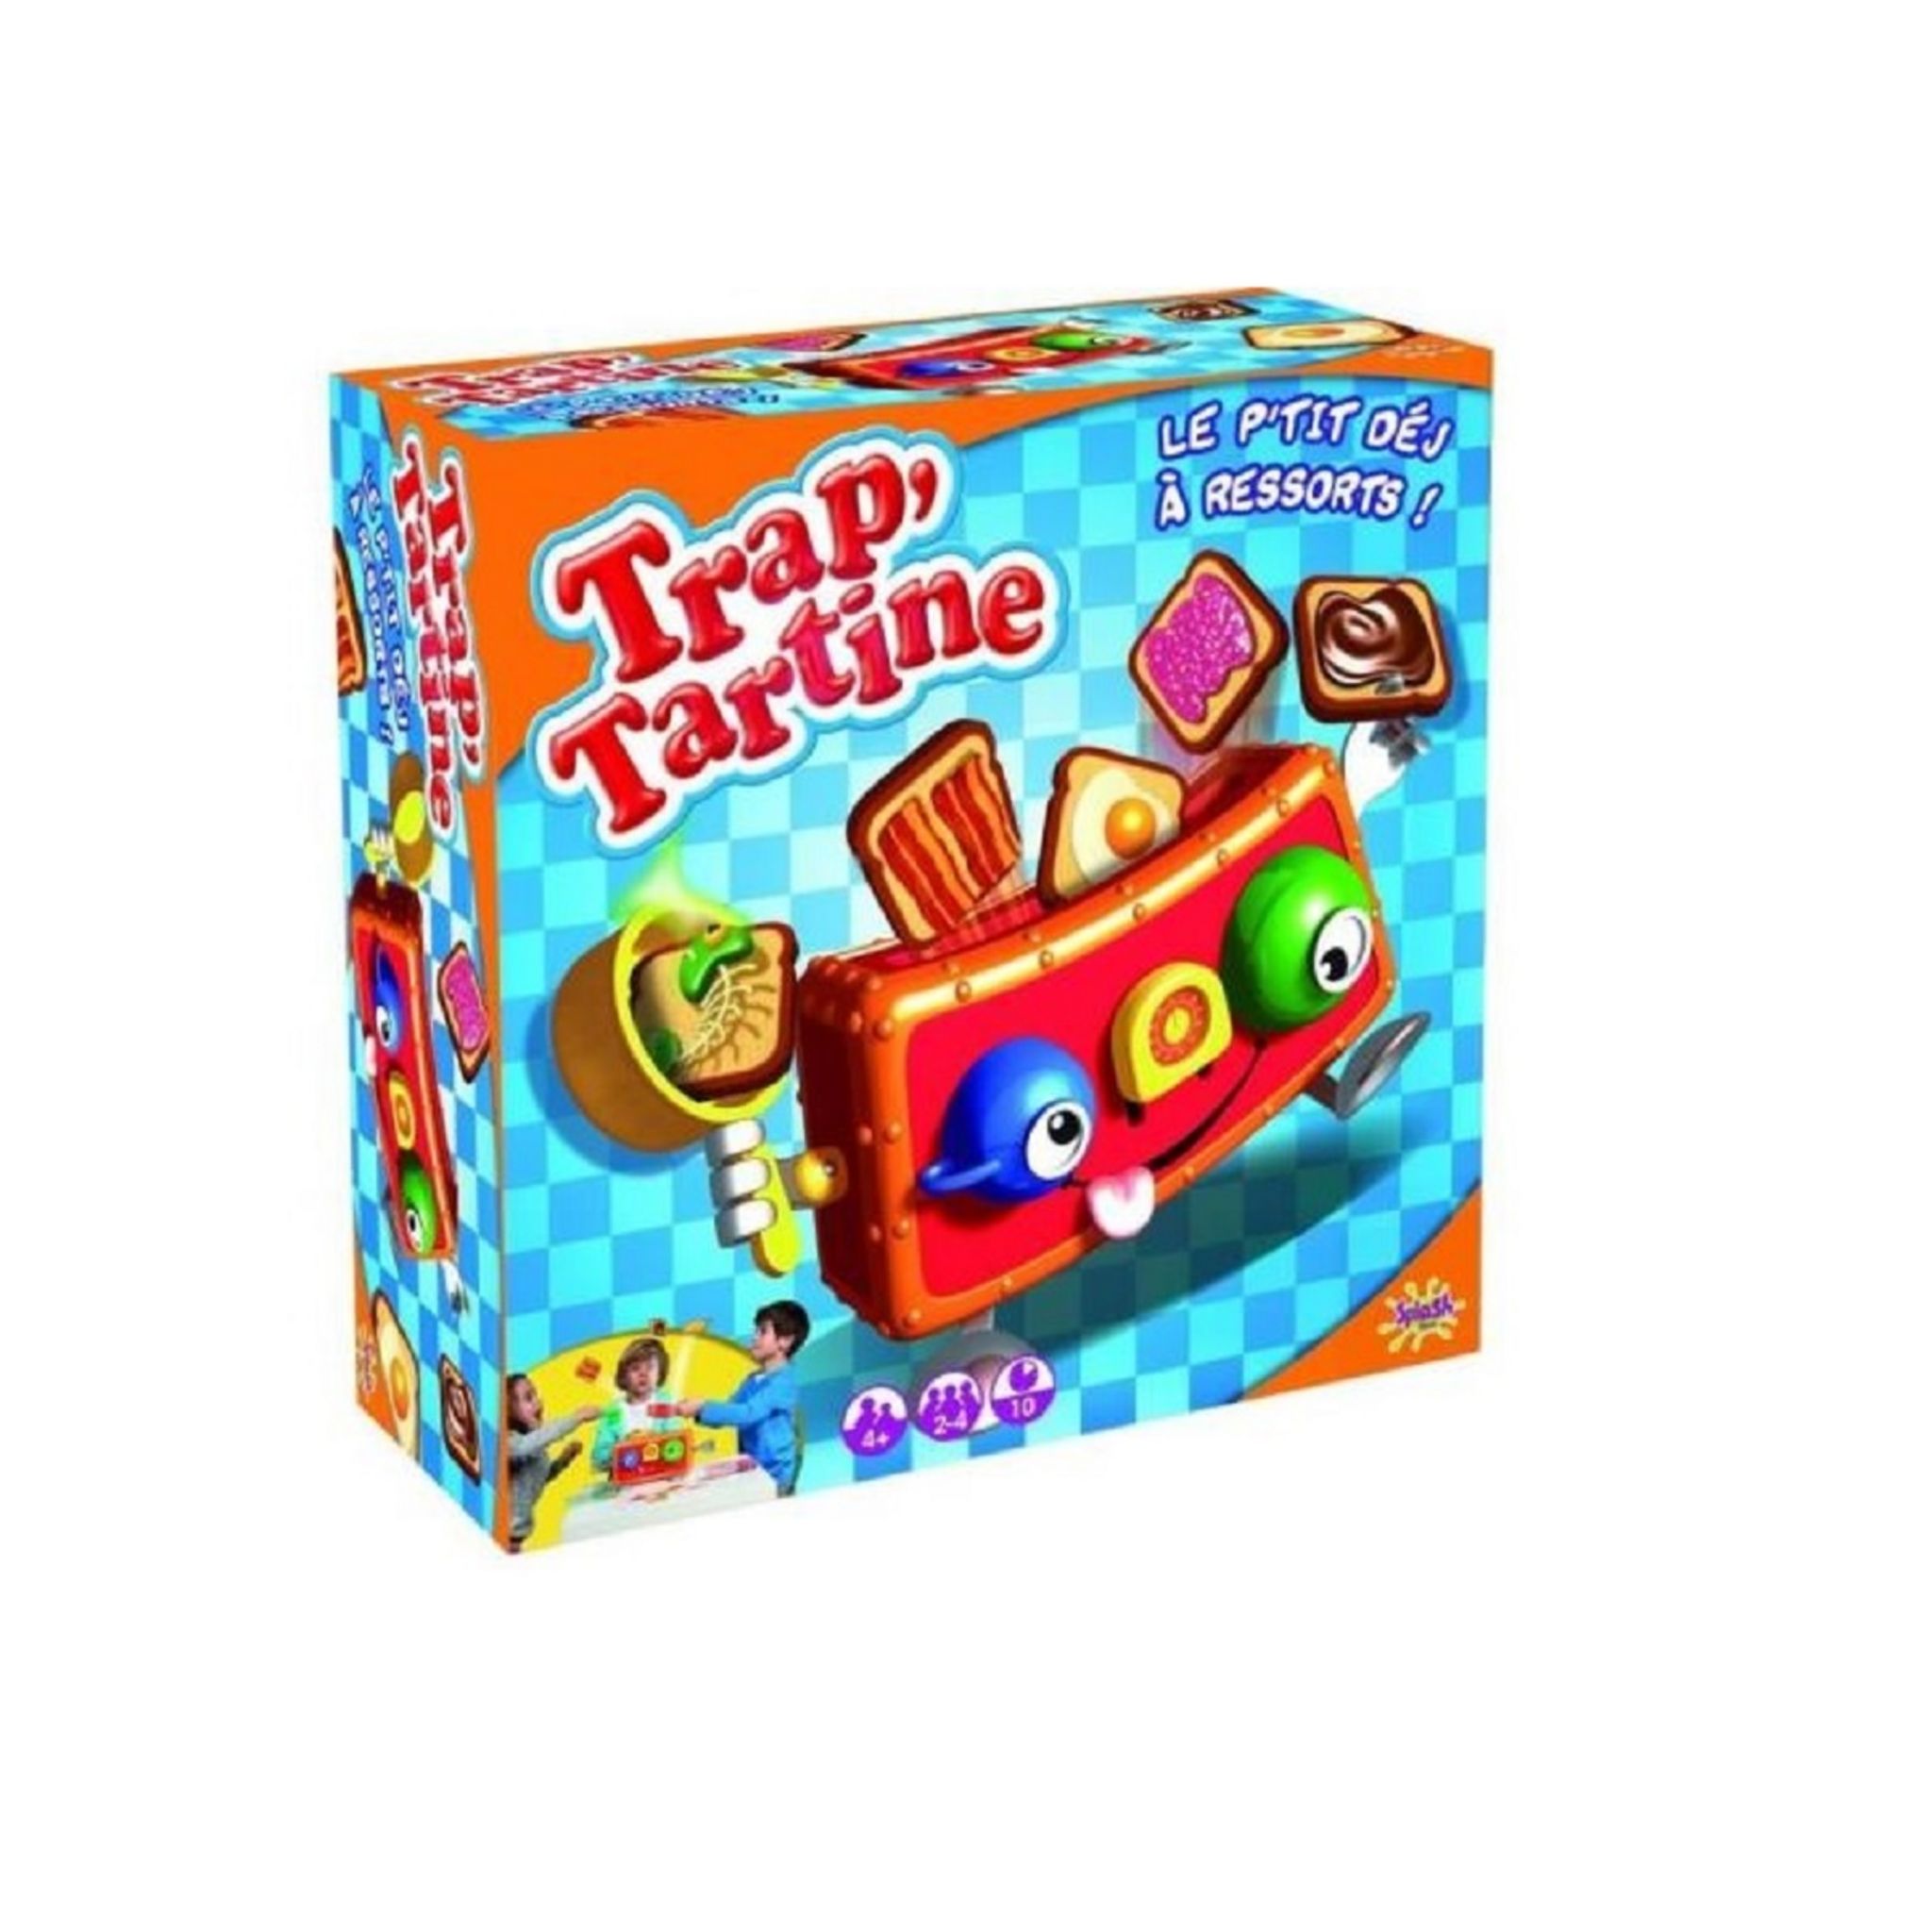 Trap tartine - Splash Toys | Beebs